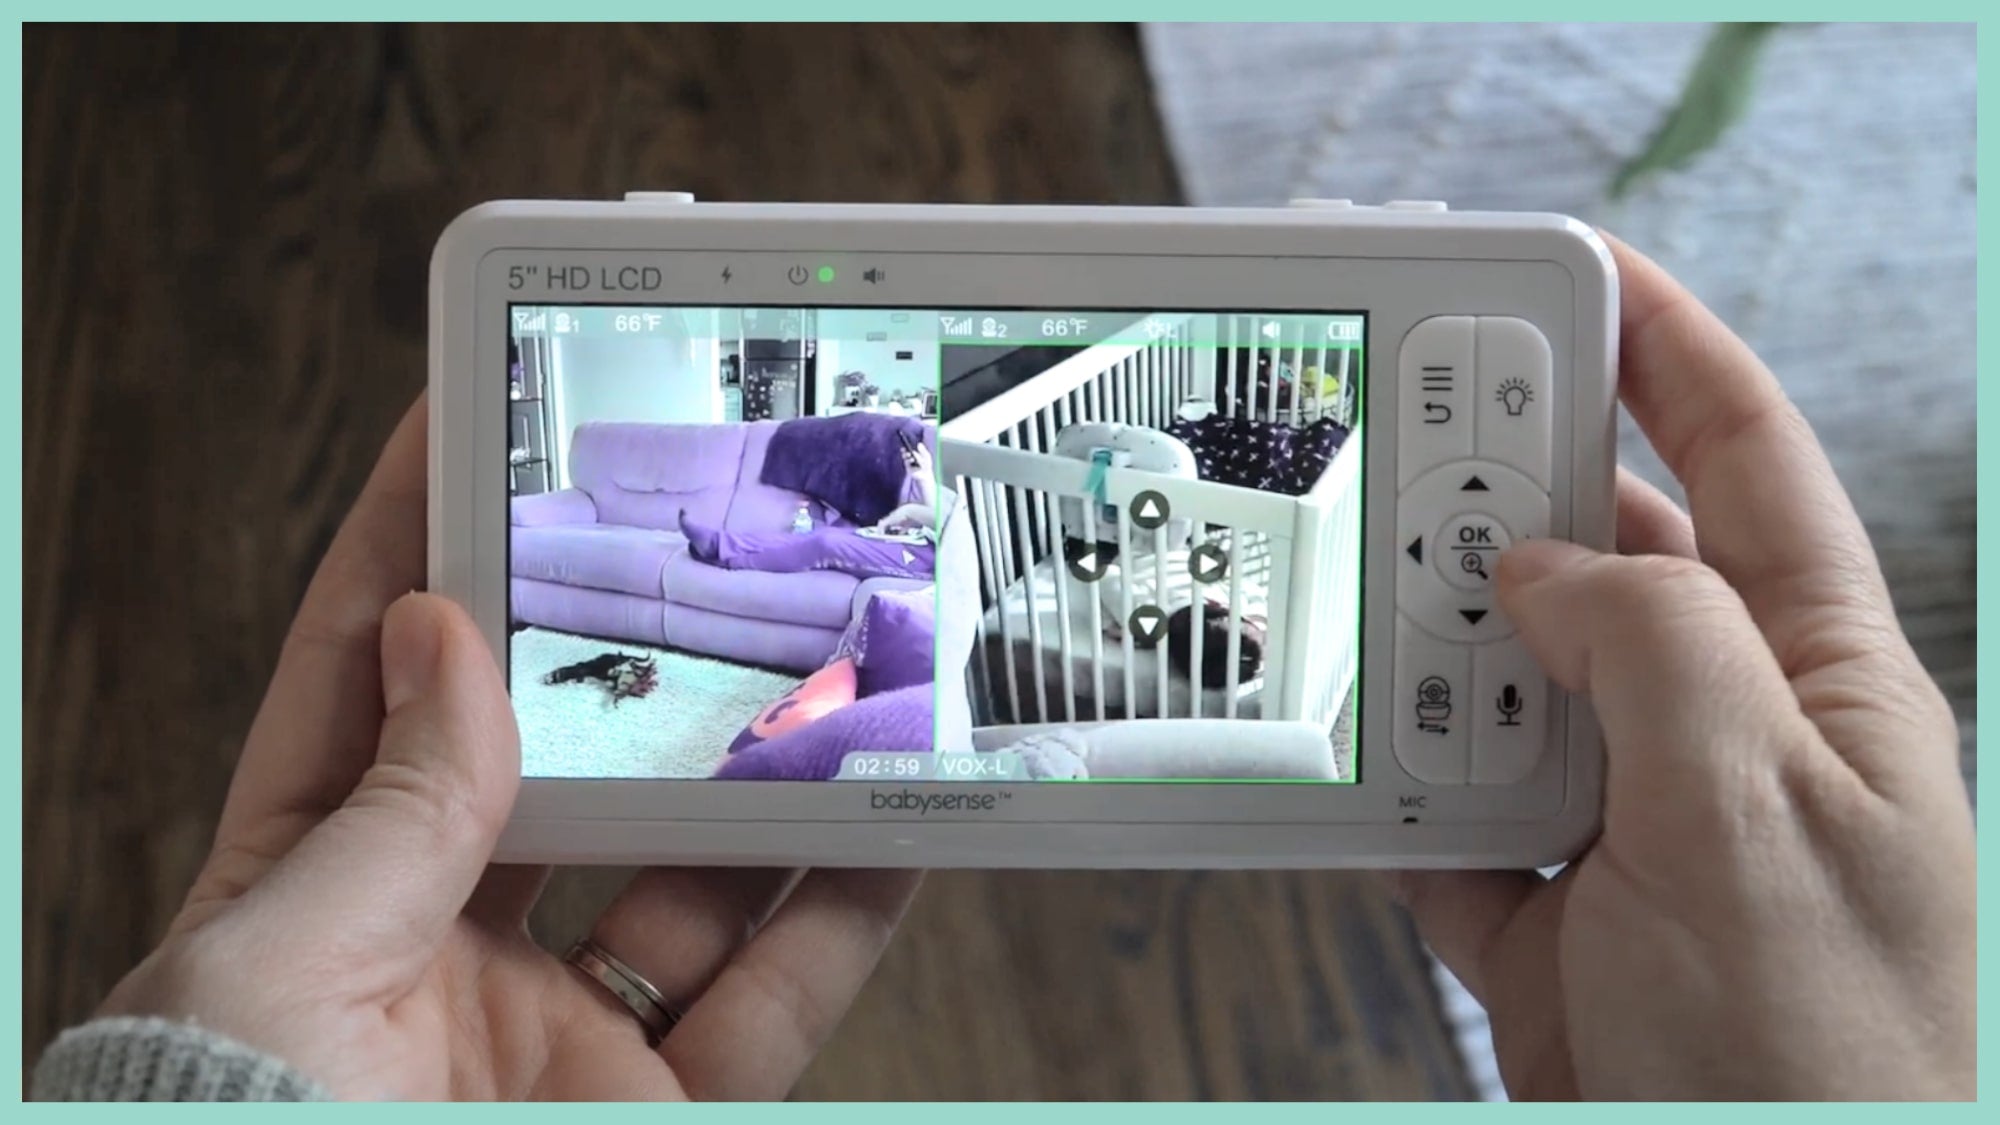 Moniteur pour bébé Luvion Prestige Touch 2 avec caméra + Babysense